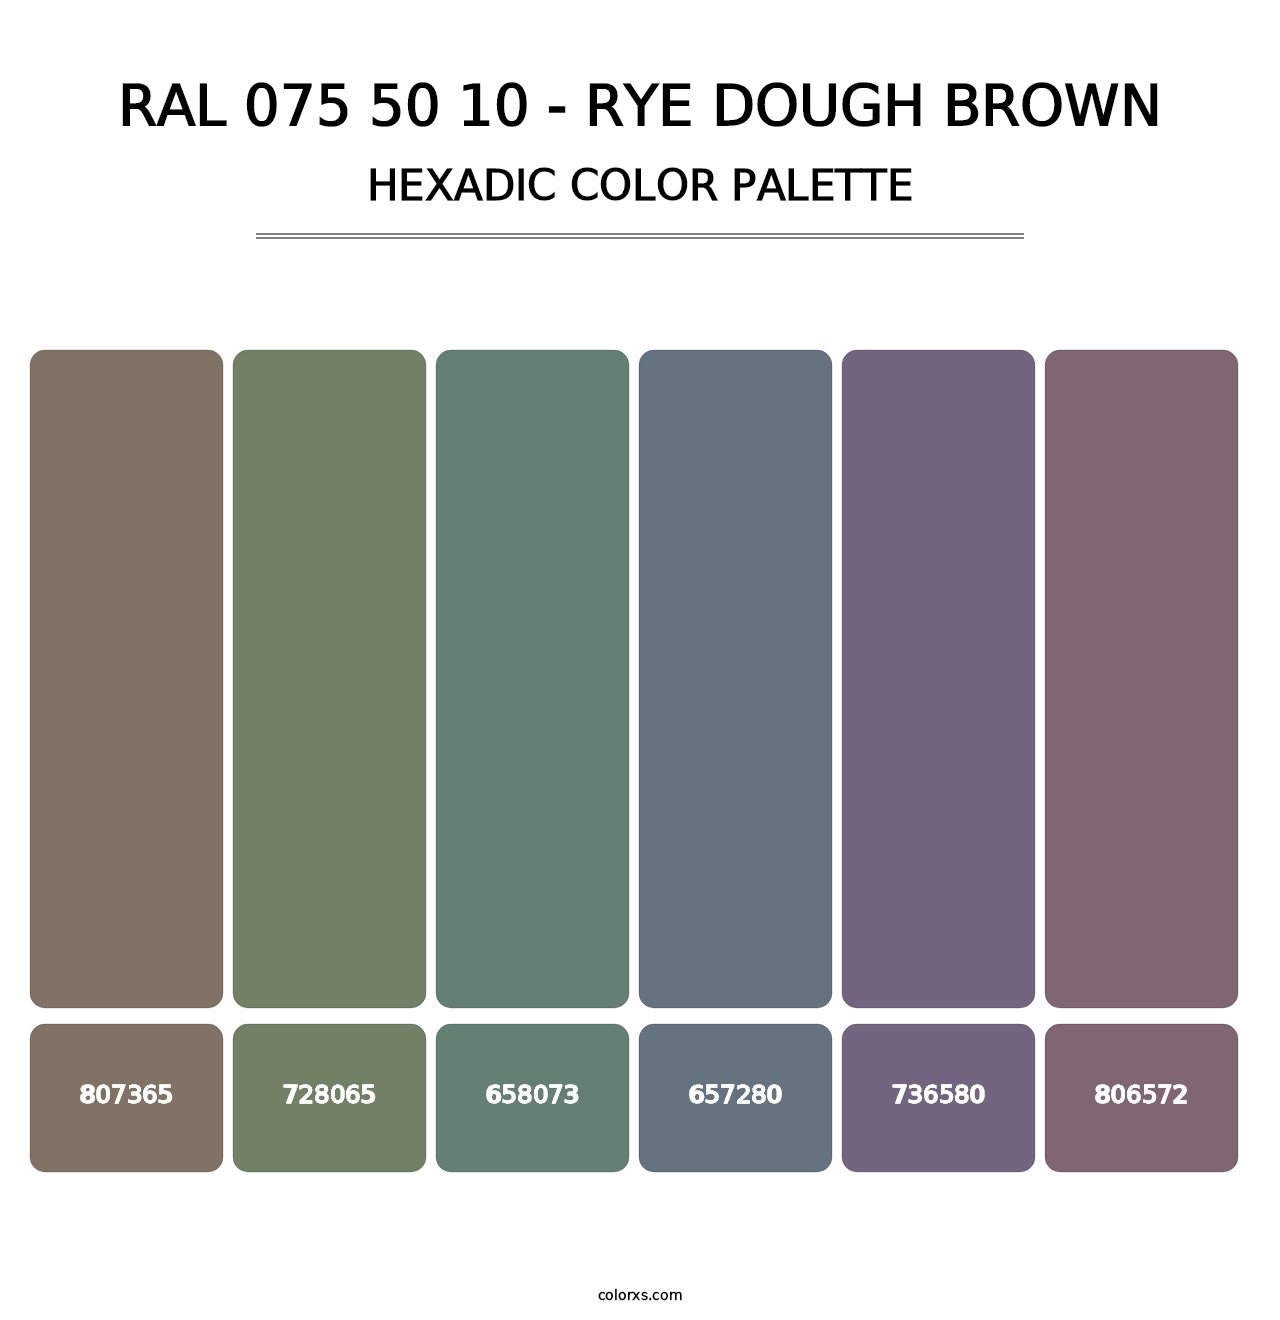 RAL 075 50 10 - Rye Dough Brown - Hexadic Color Palette